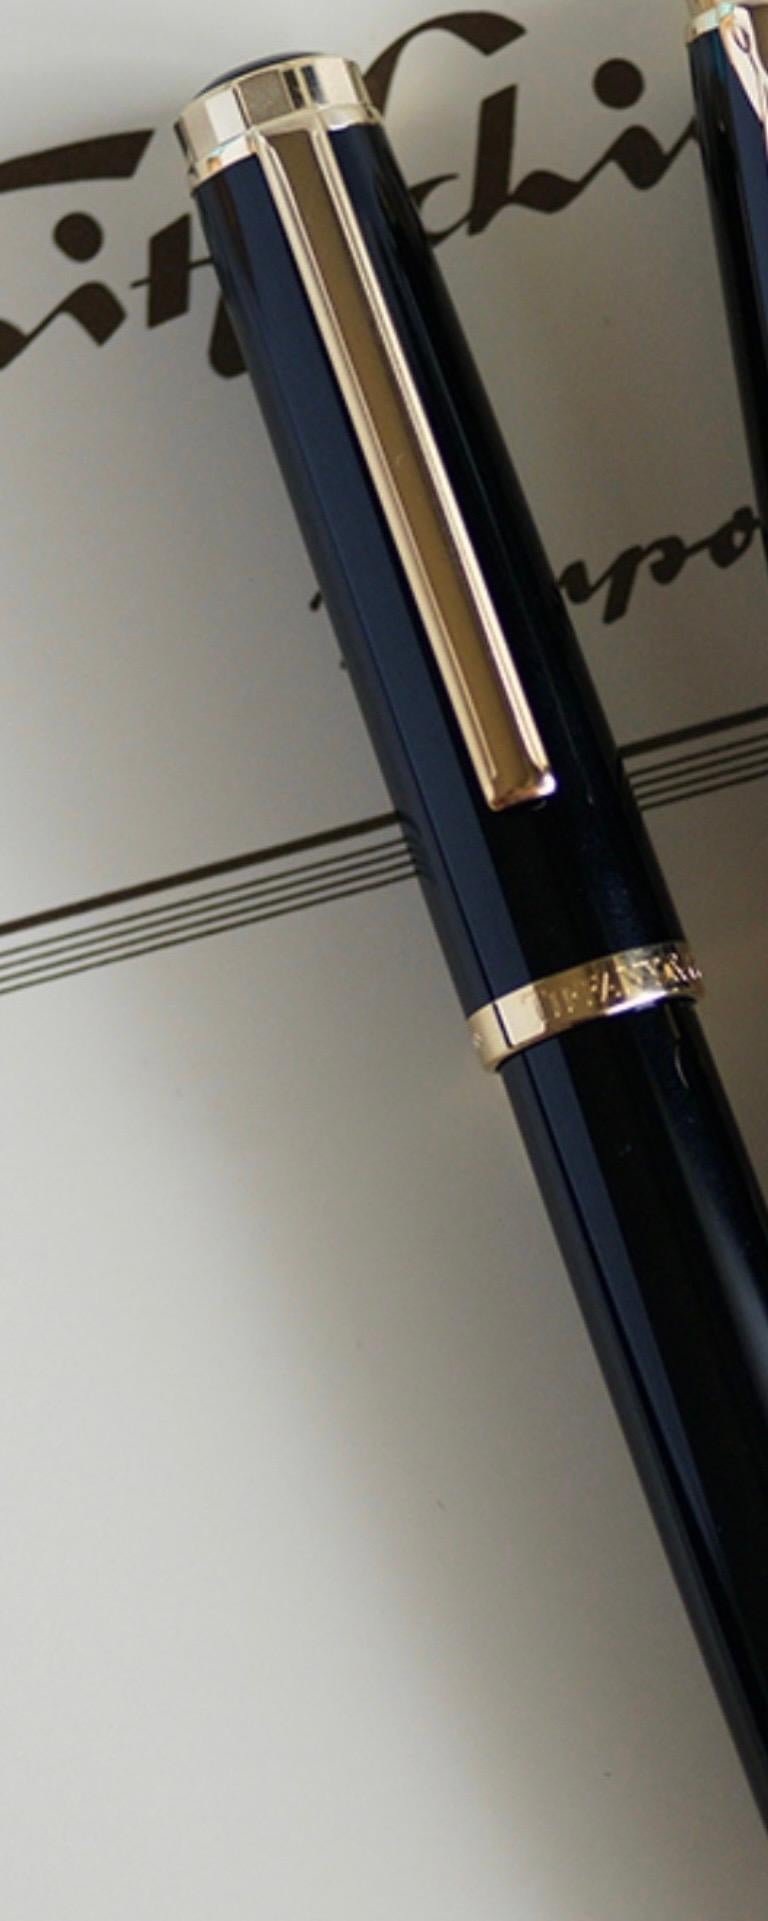 Description
Modèle : Tiffany & CO Atlas 
Stylo à plume 
Bouchon et tonneau : Résine noire et plaque d'or
Plume/Pointe : Plume large en or 18 carats
sur la plume marquée Tiffany & CO , 18K / 750 et F
Longueur de 5,5 pouces
poids du stylo 28,15 gm
15